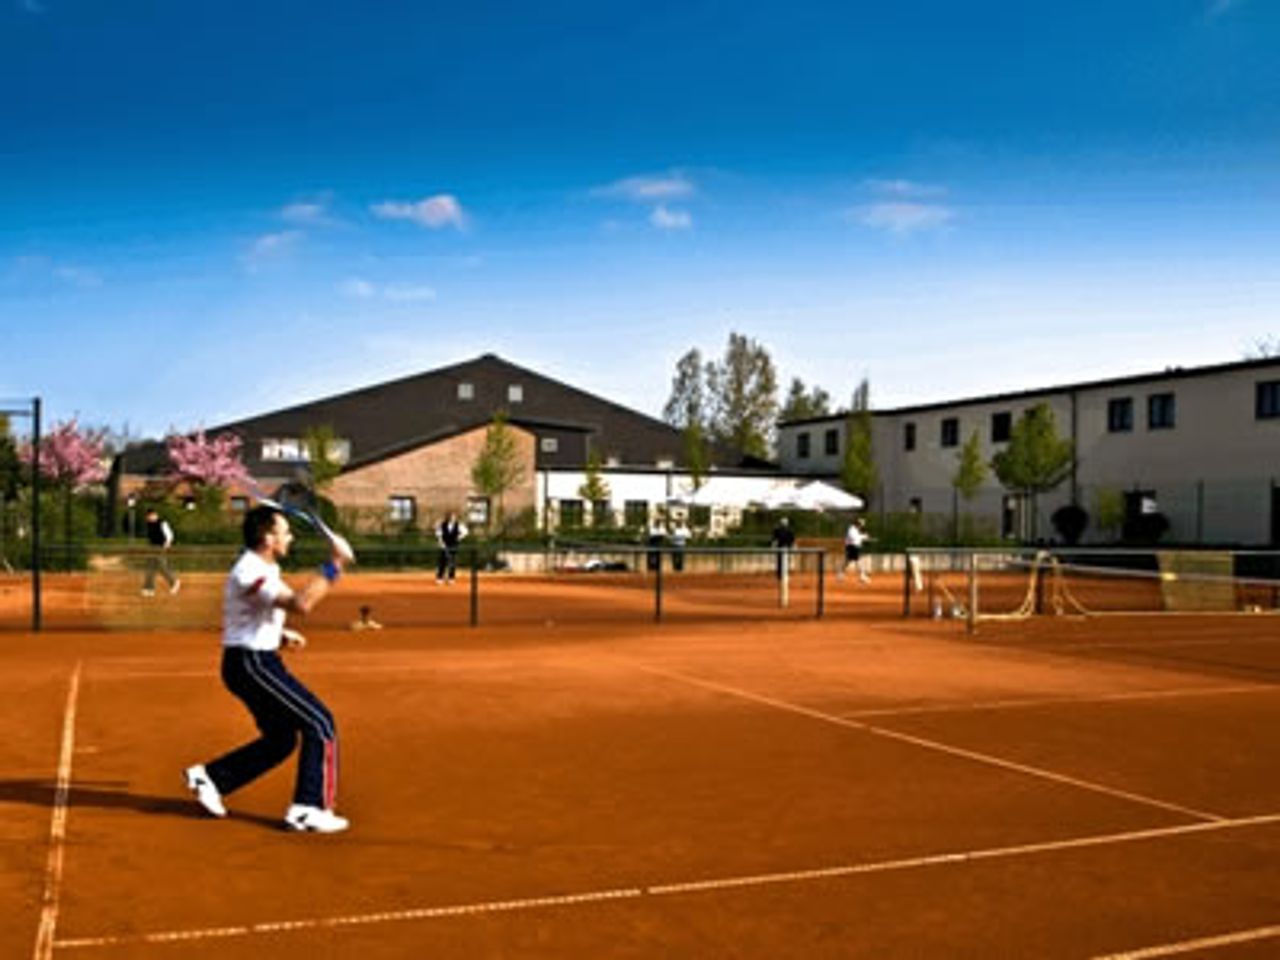 Tennis Total - Trainieren wie die Profis!